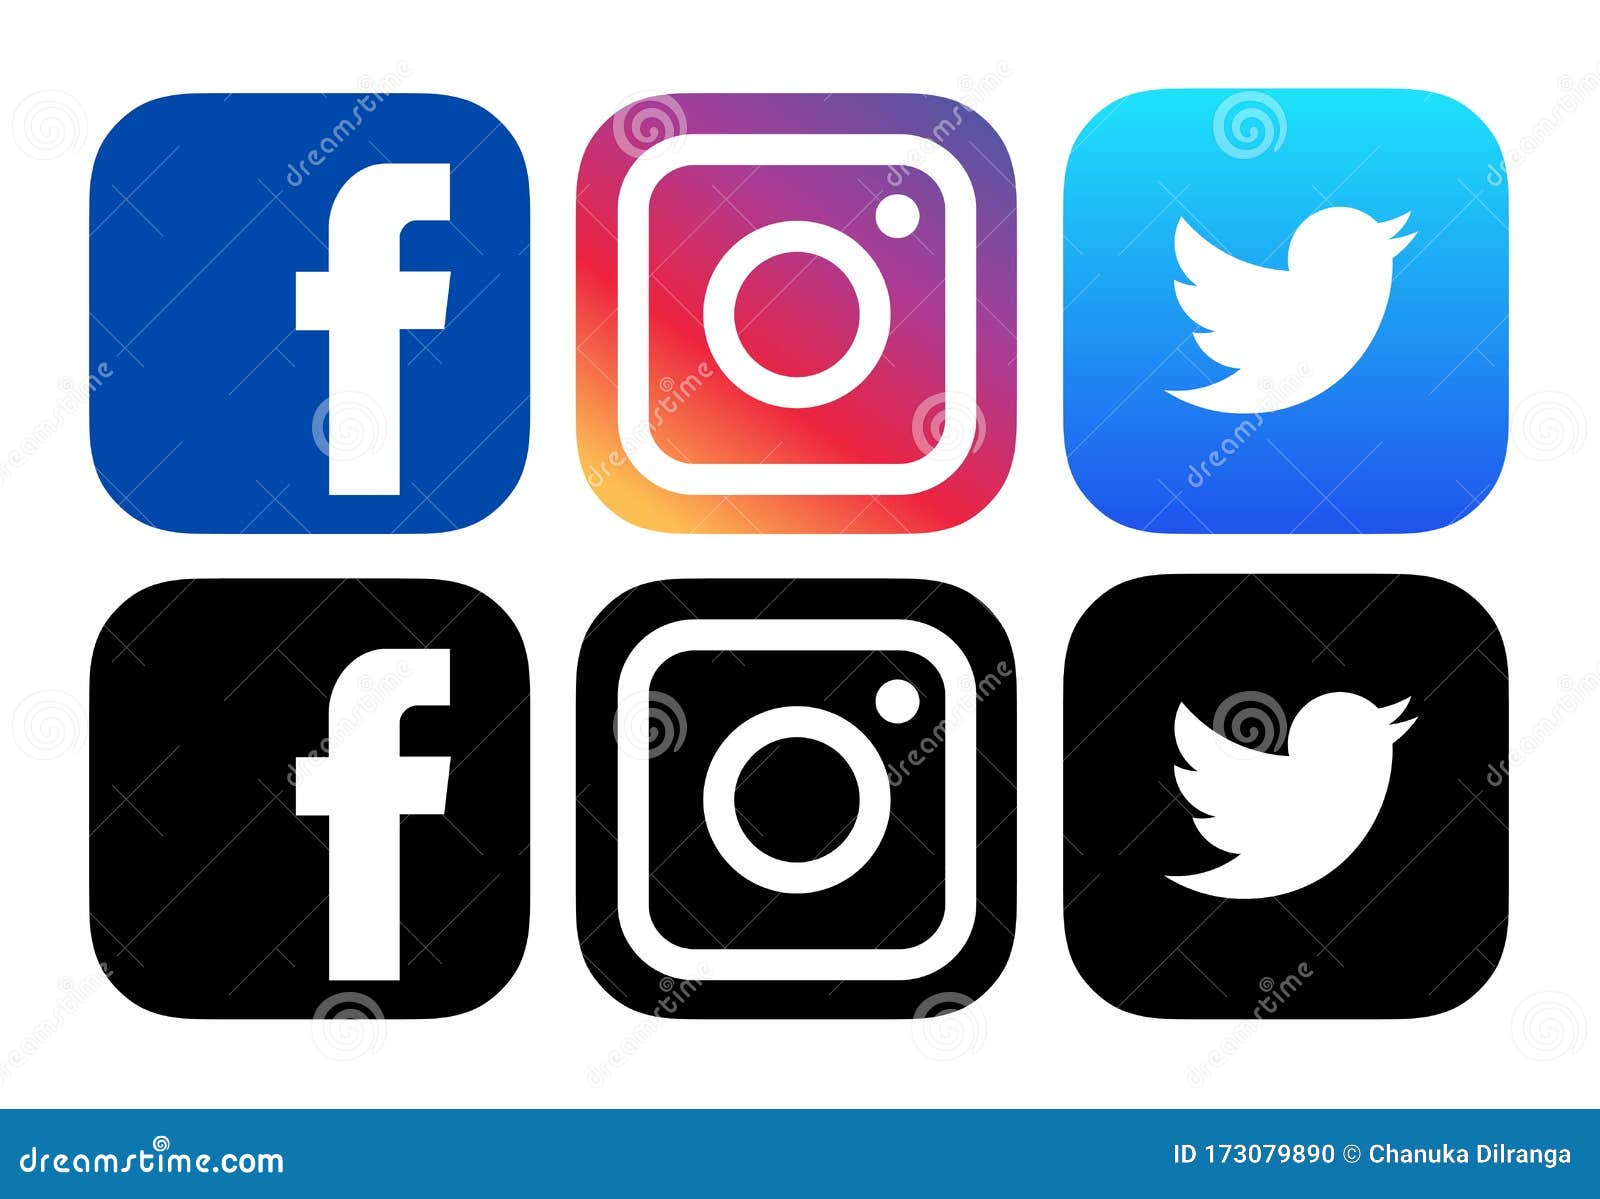 Srilanka 19 February 2020 Set Of Popular Social Media Logos